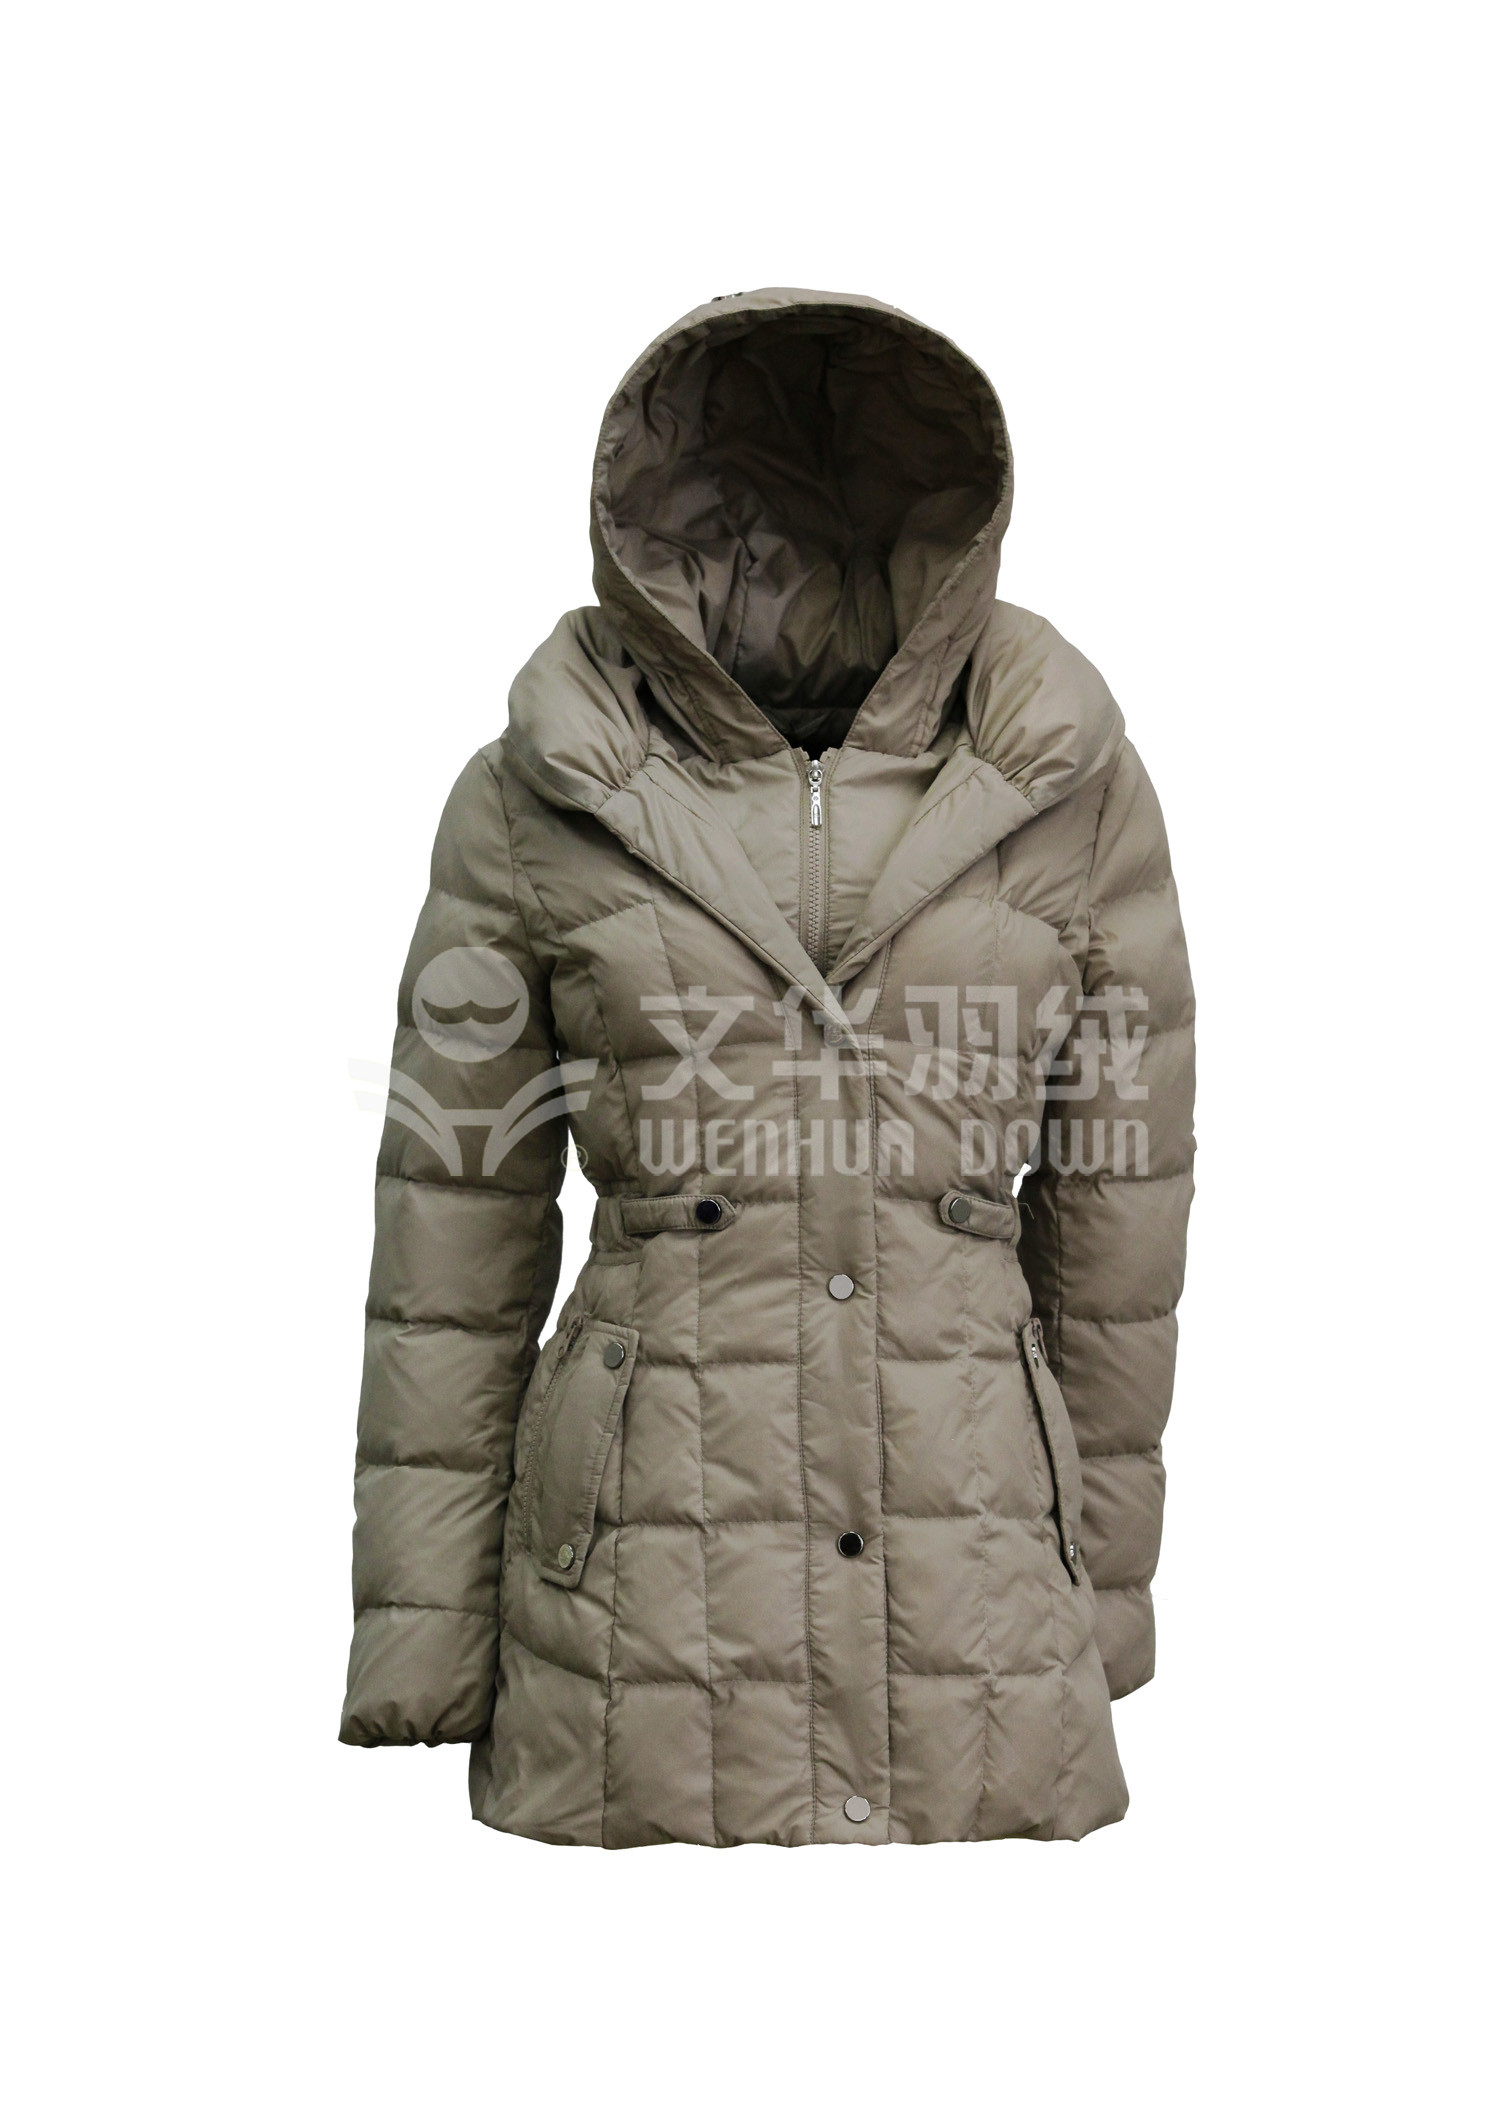 厂家批发2020冬季新款羽绒服 韩版修身超加长款女士冬装外套-阿里巴巴